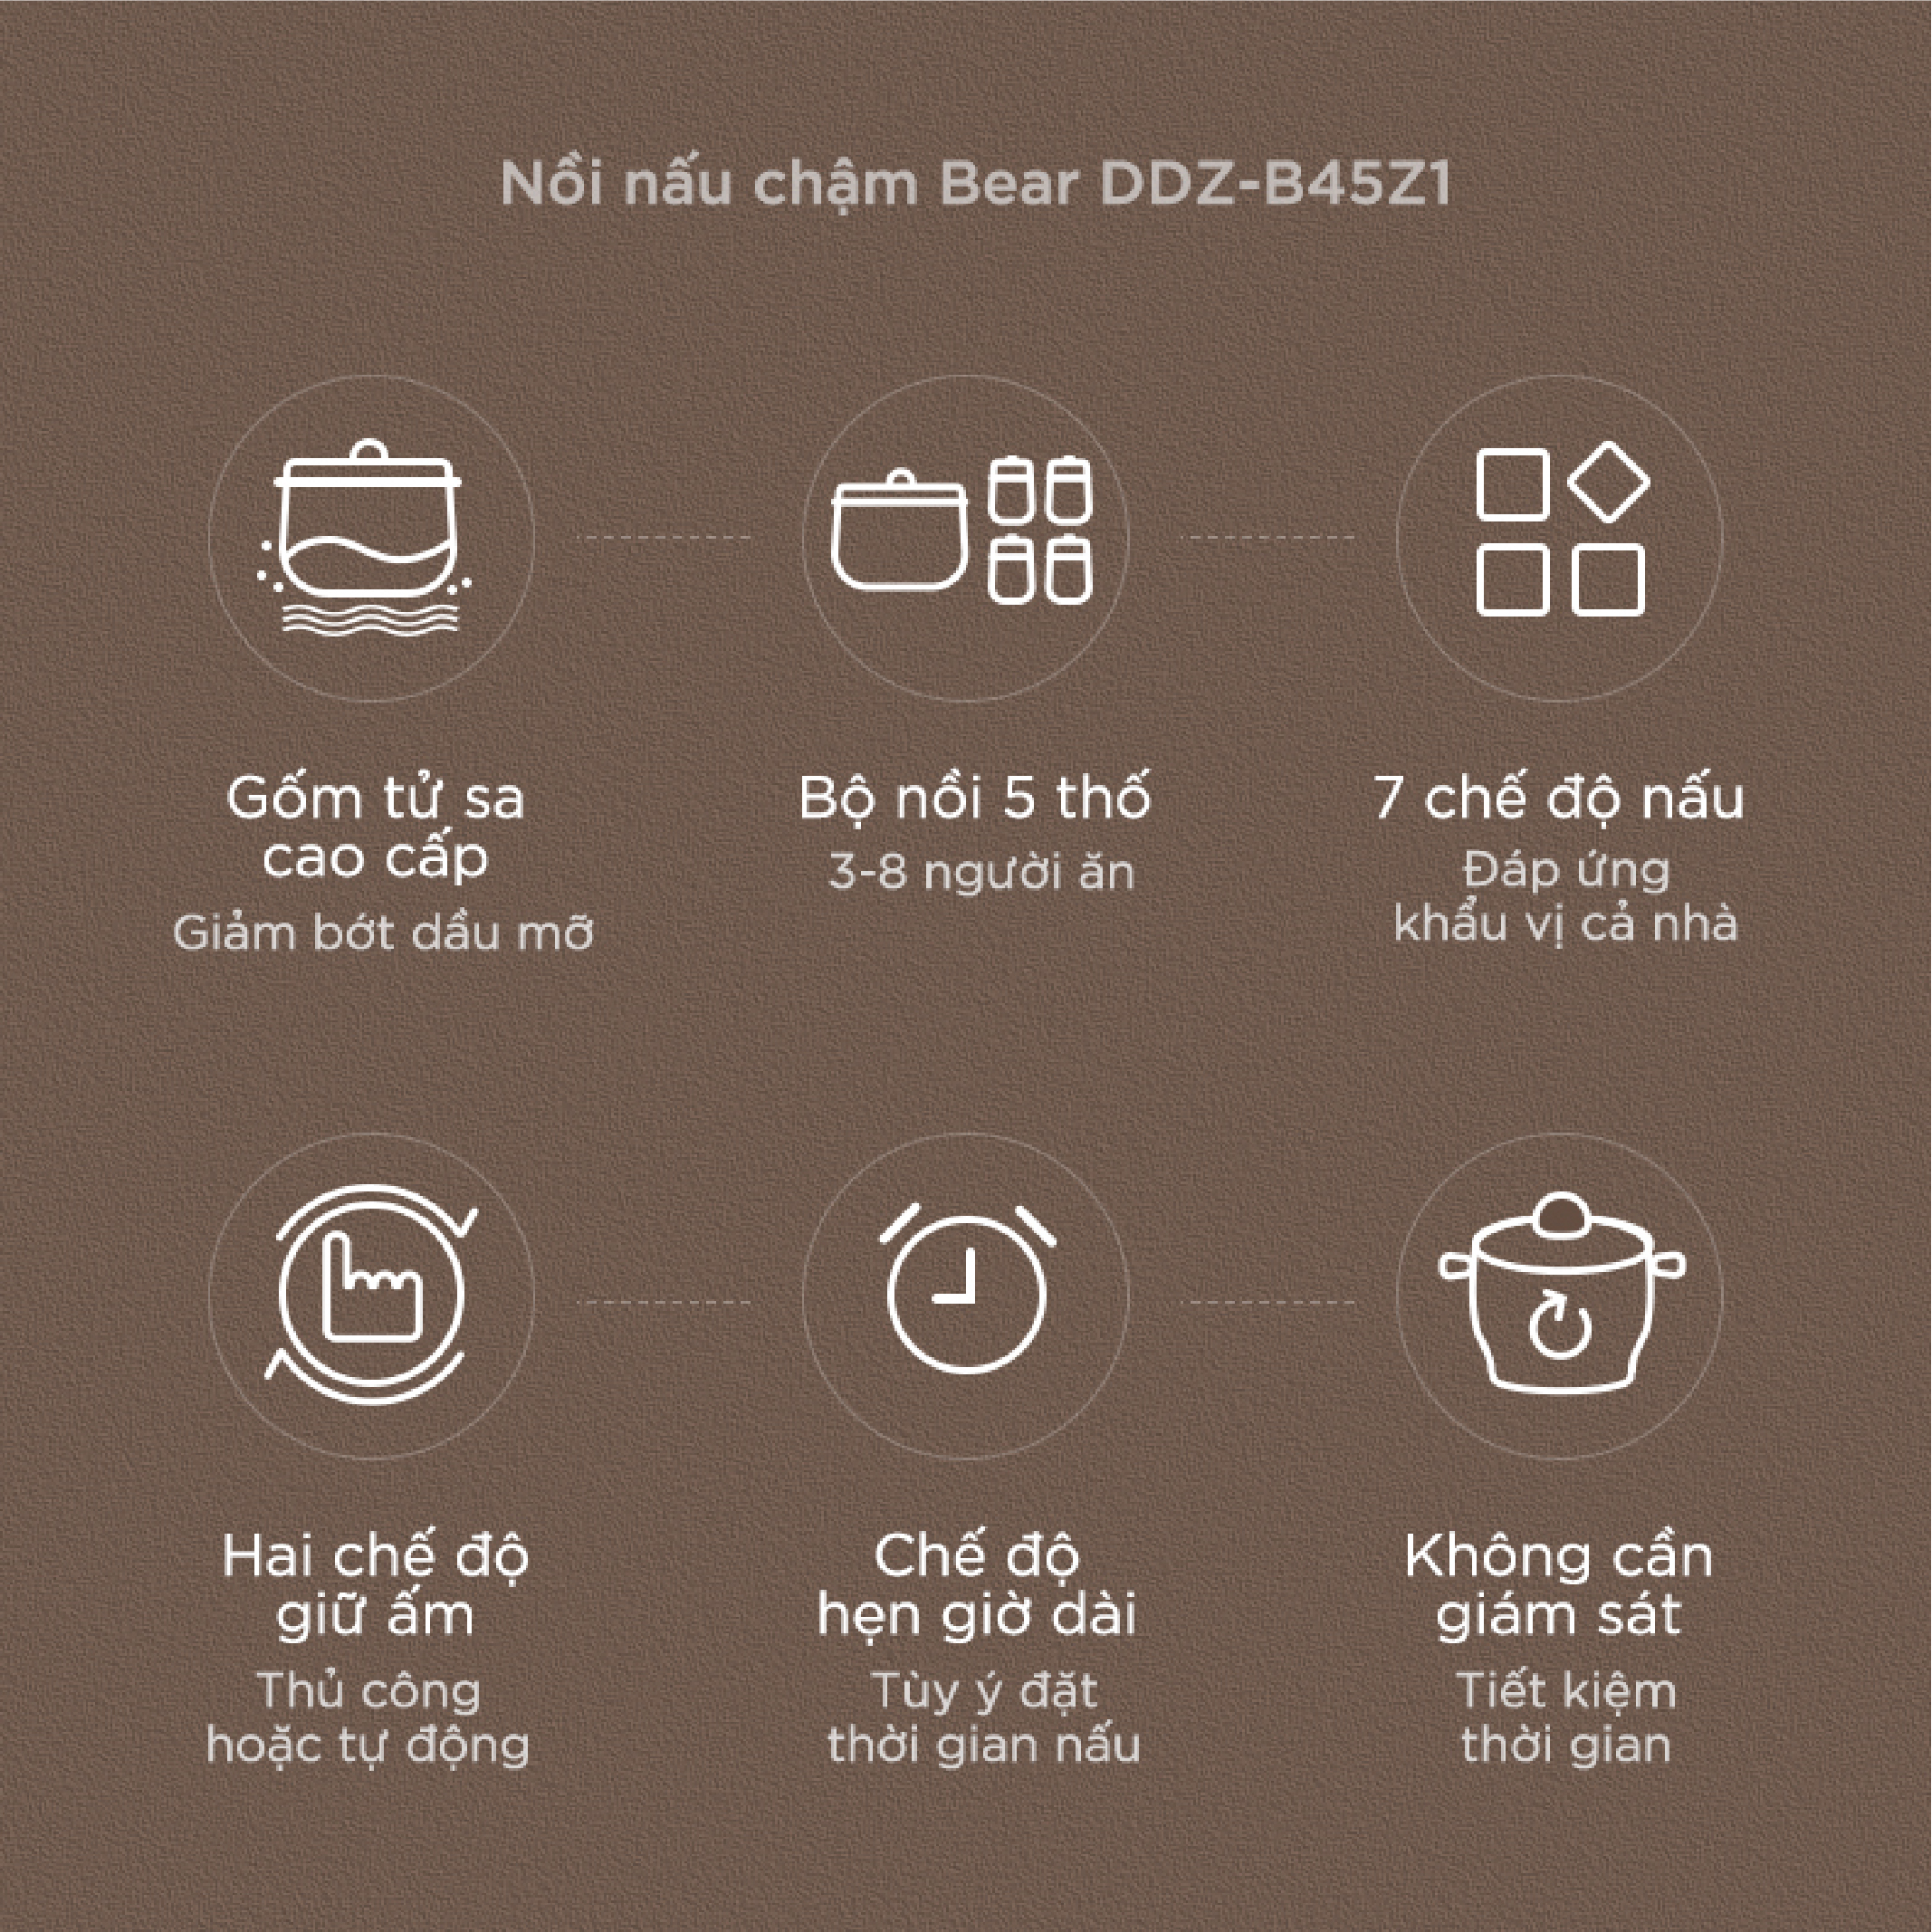 Nồi nấu chậm Bear DDZ-B45Z1 - Dung tích 4.5L - Hàng chính hãng - Tiếng Anh/Việt - BH 18 tháng - Full VAT